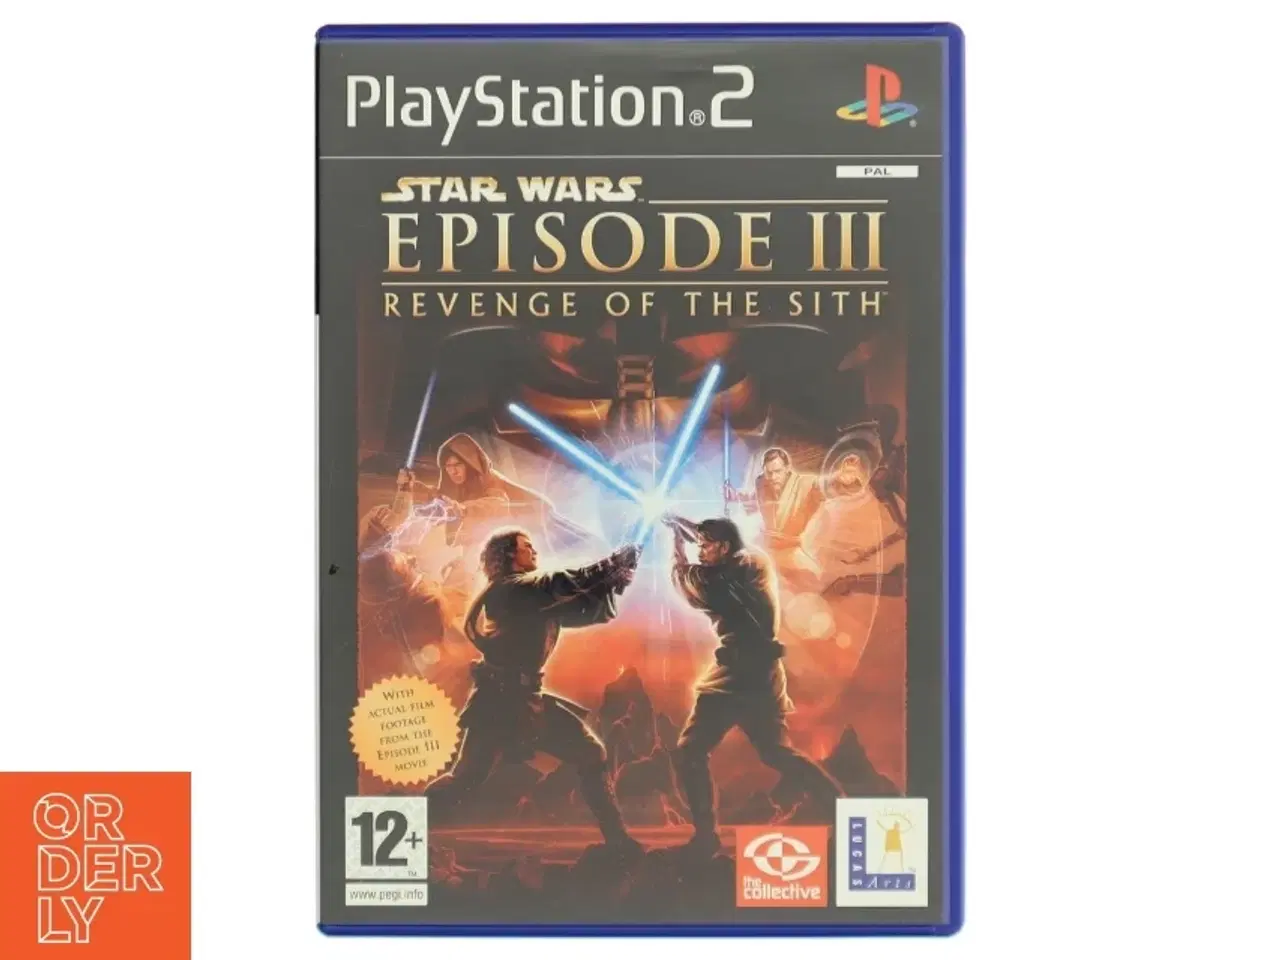 Billede 1 - Star Wars: Episode III - Revenge of the Sith PS2 spil fra LucasArts